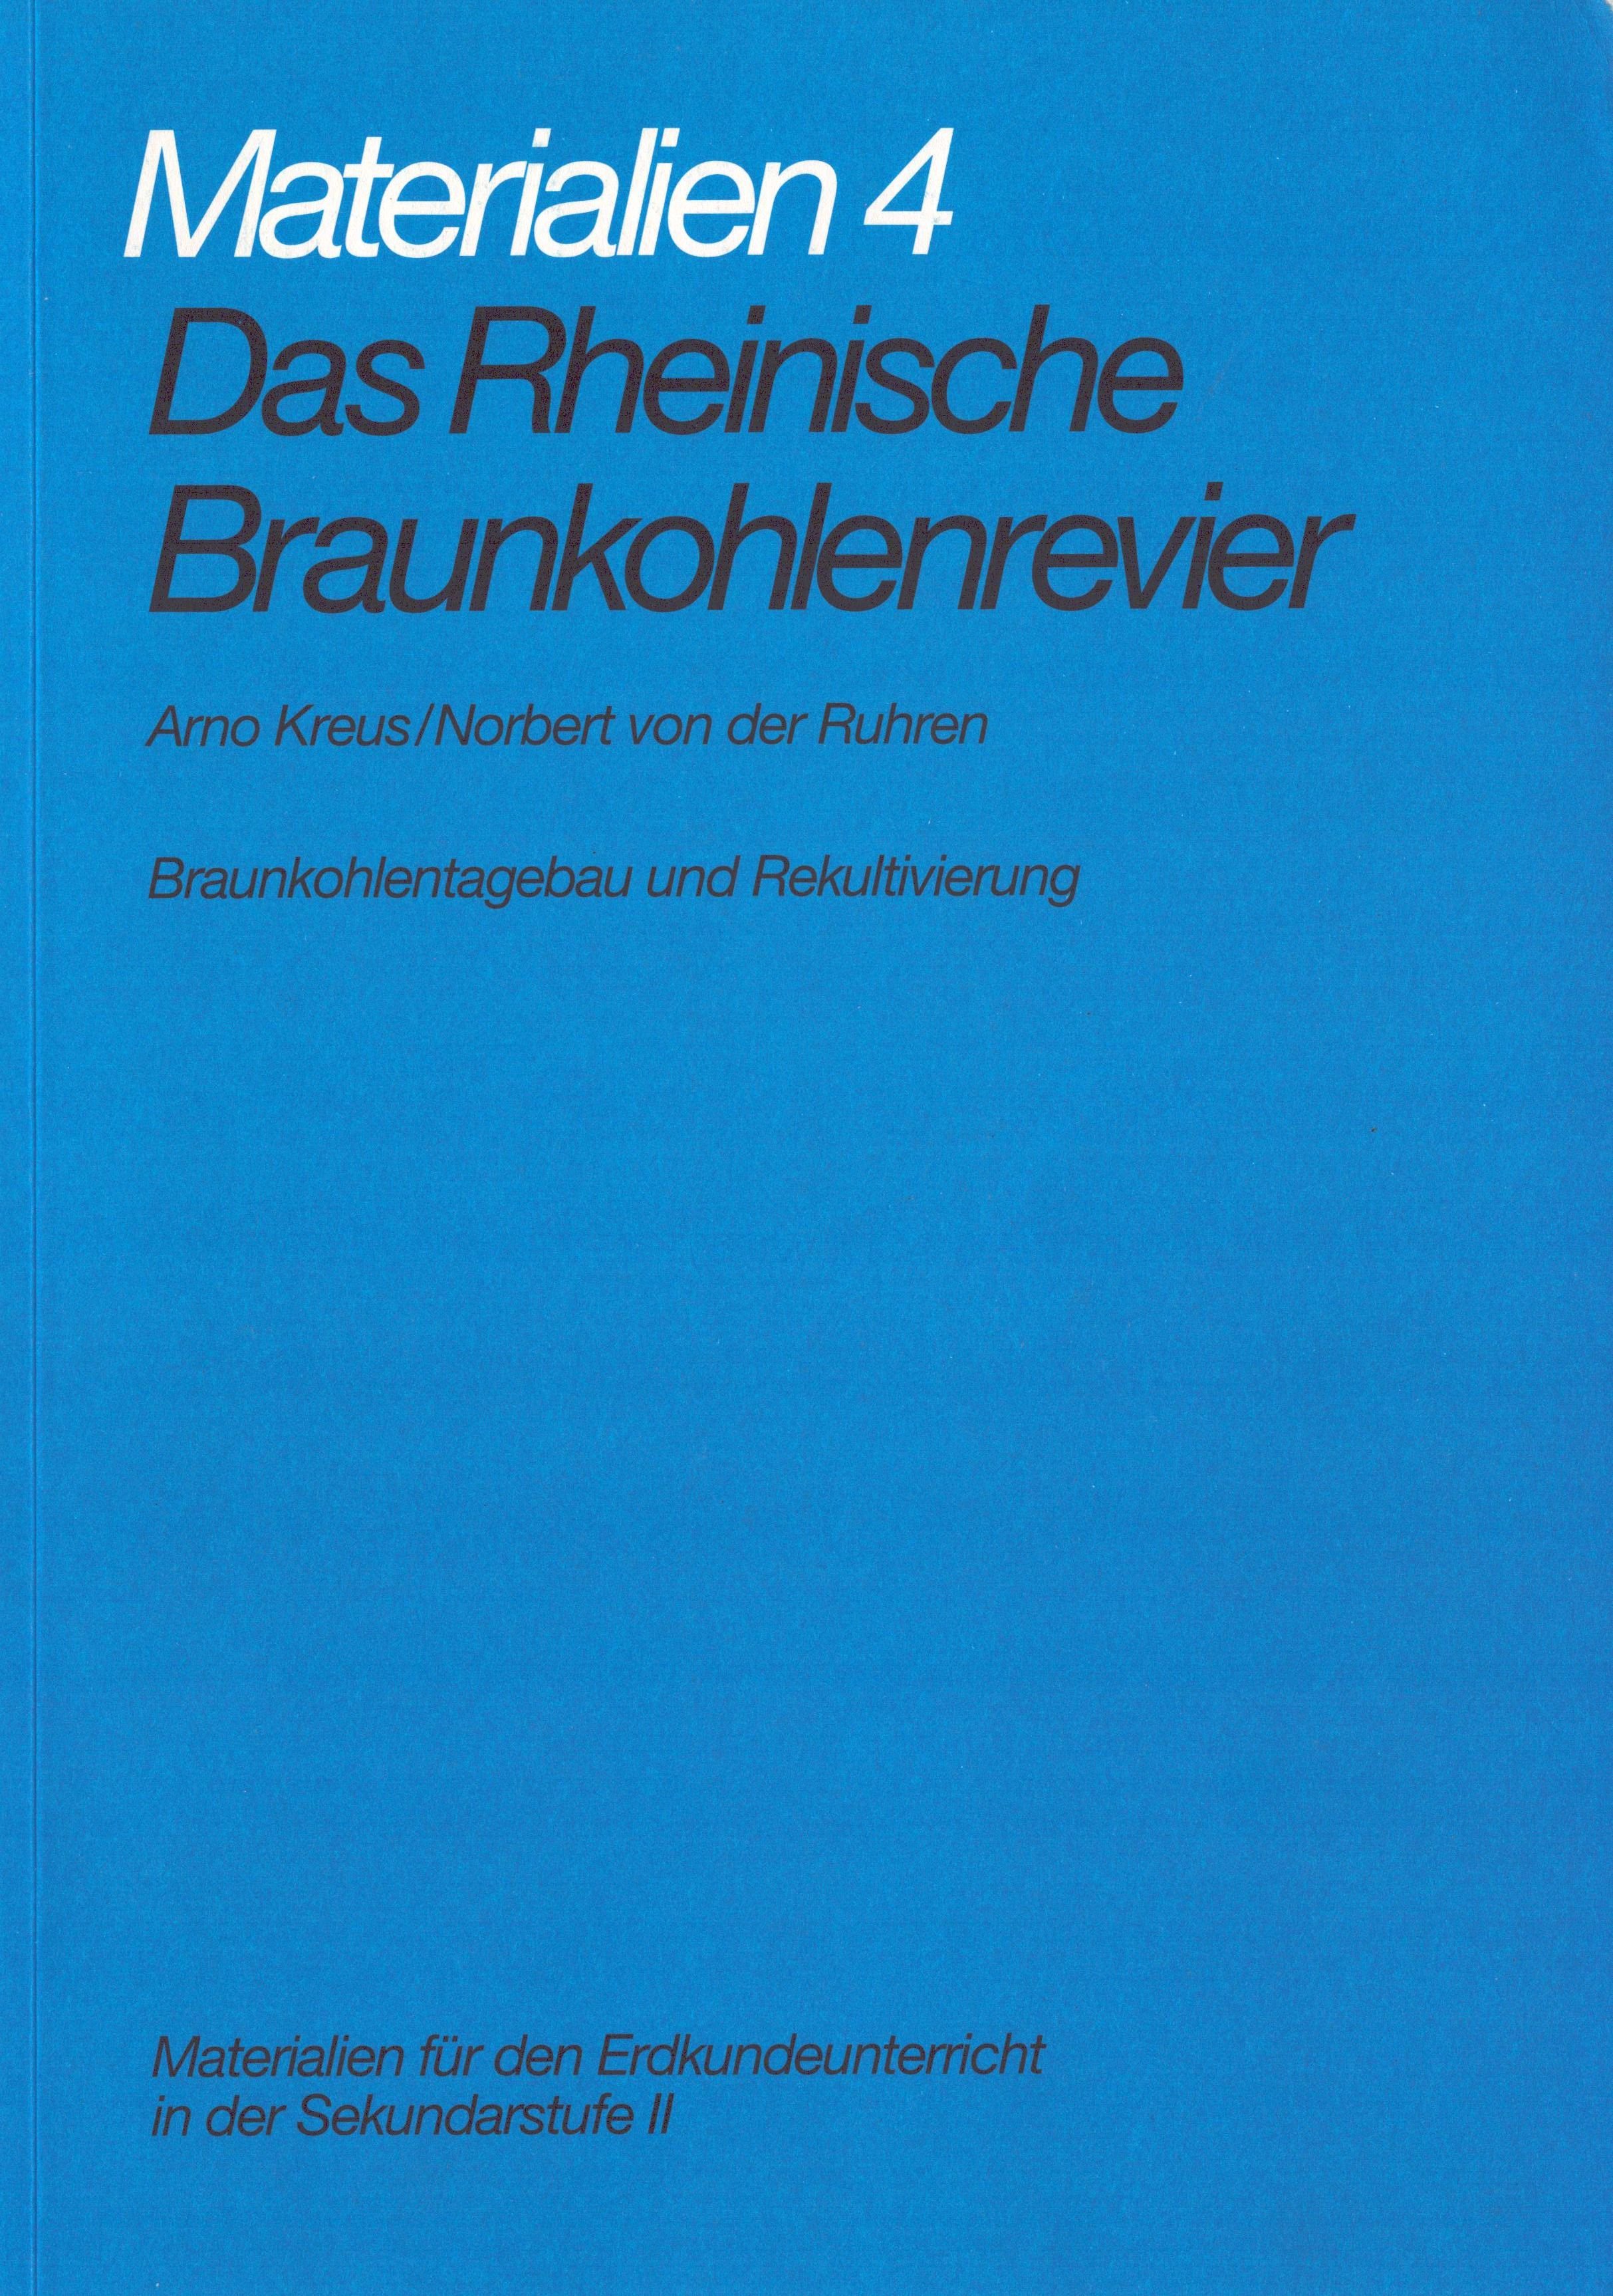 Das Rheinische Braunkohlenrevier. Materialien 4: Braunkohlentagebau und Rekultivierung (Archiv SAXONIA-FREIBERG-STIFTUNG CC BY-NC-SA)